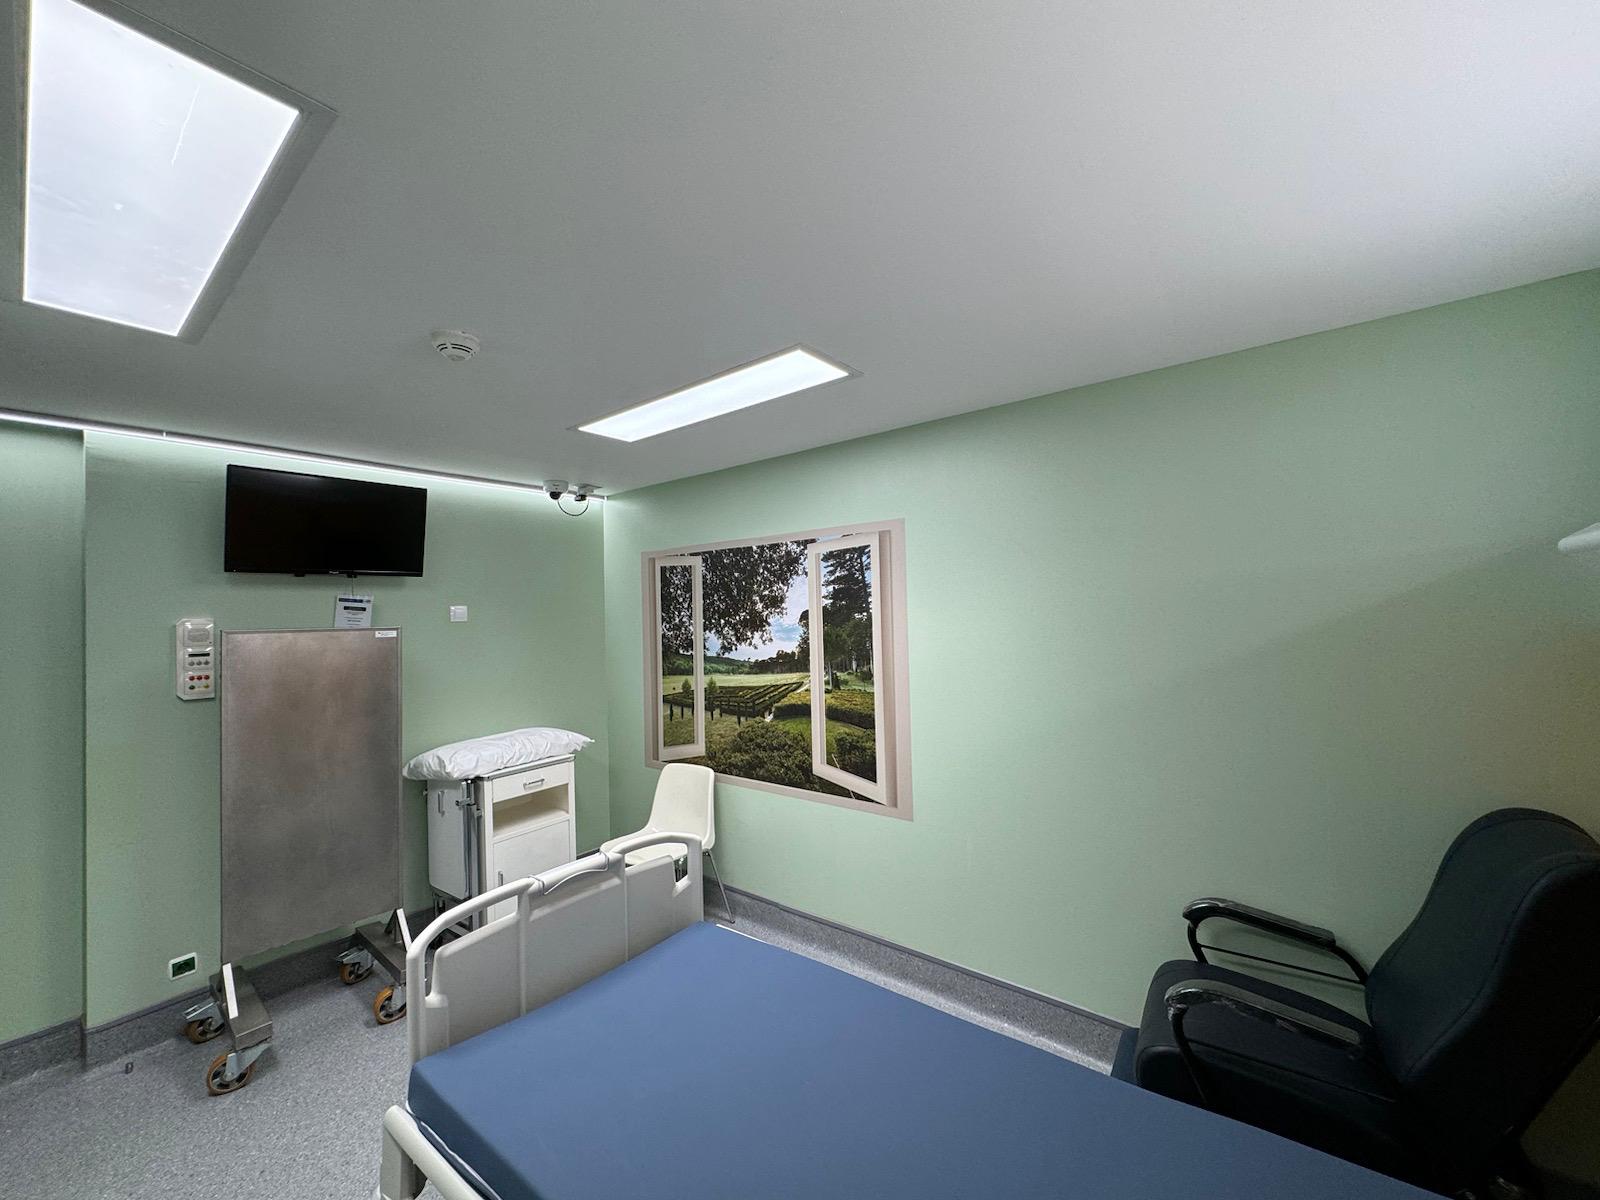 Una de las salas del hospital. | L.N.C.